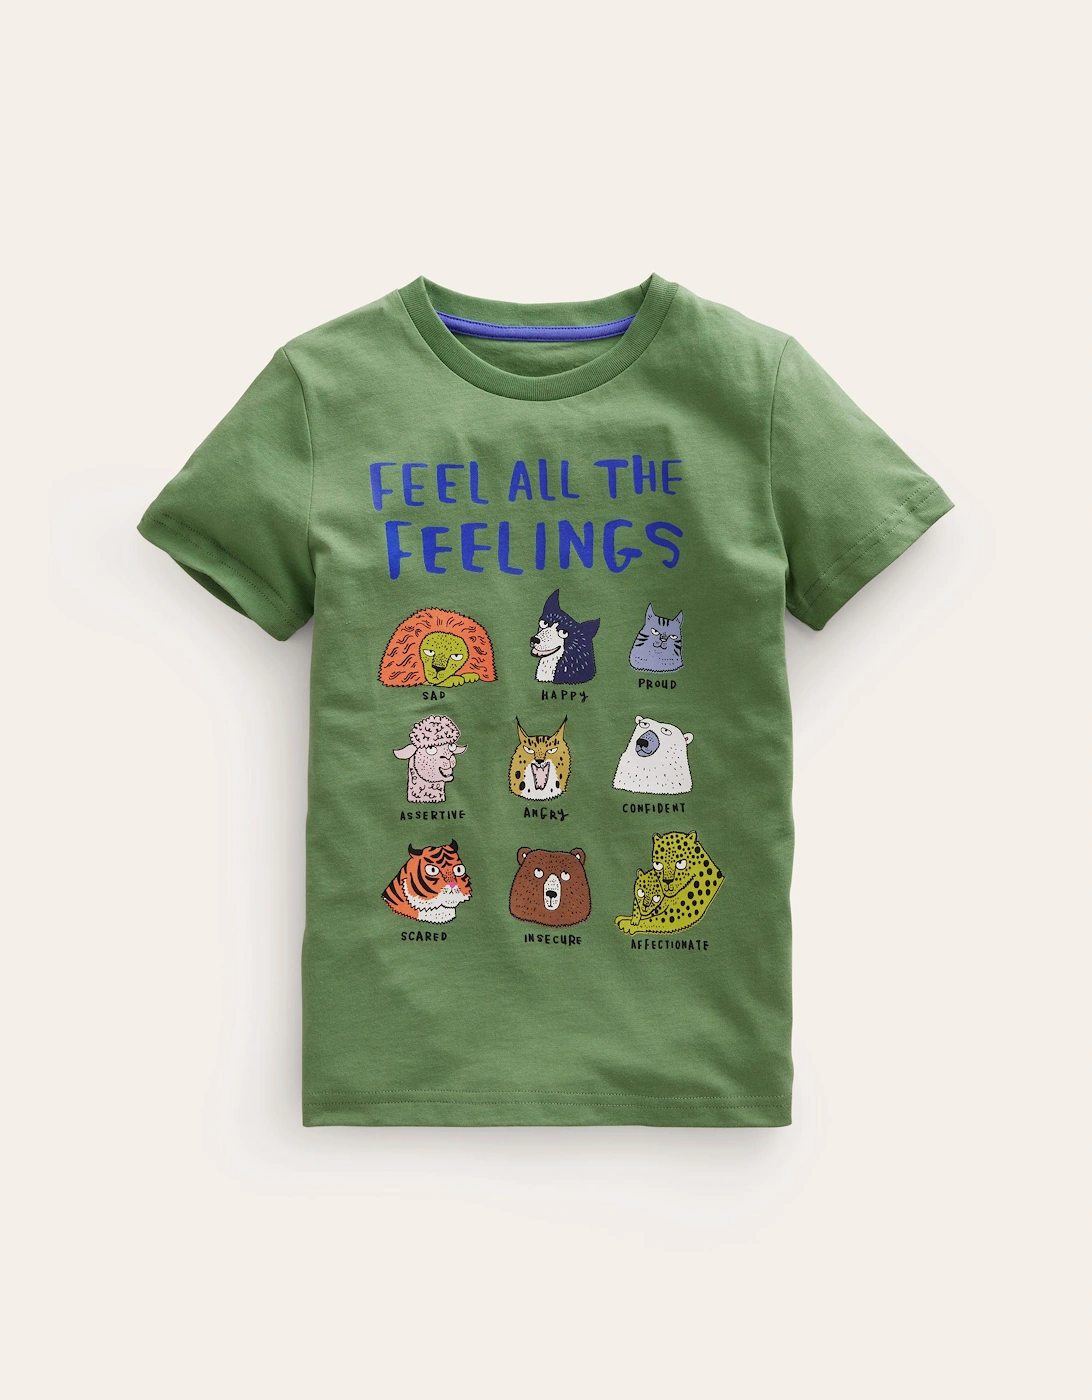 Feel The Feelings T-shirt, 2 of 1